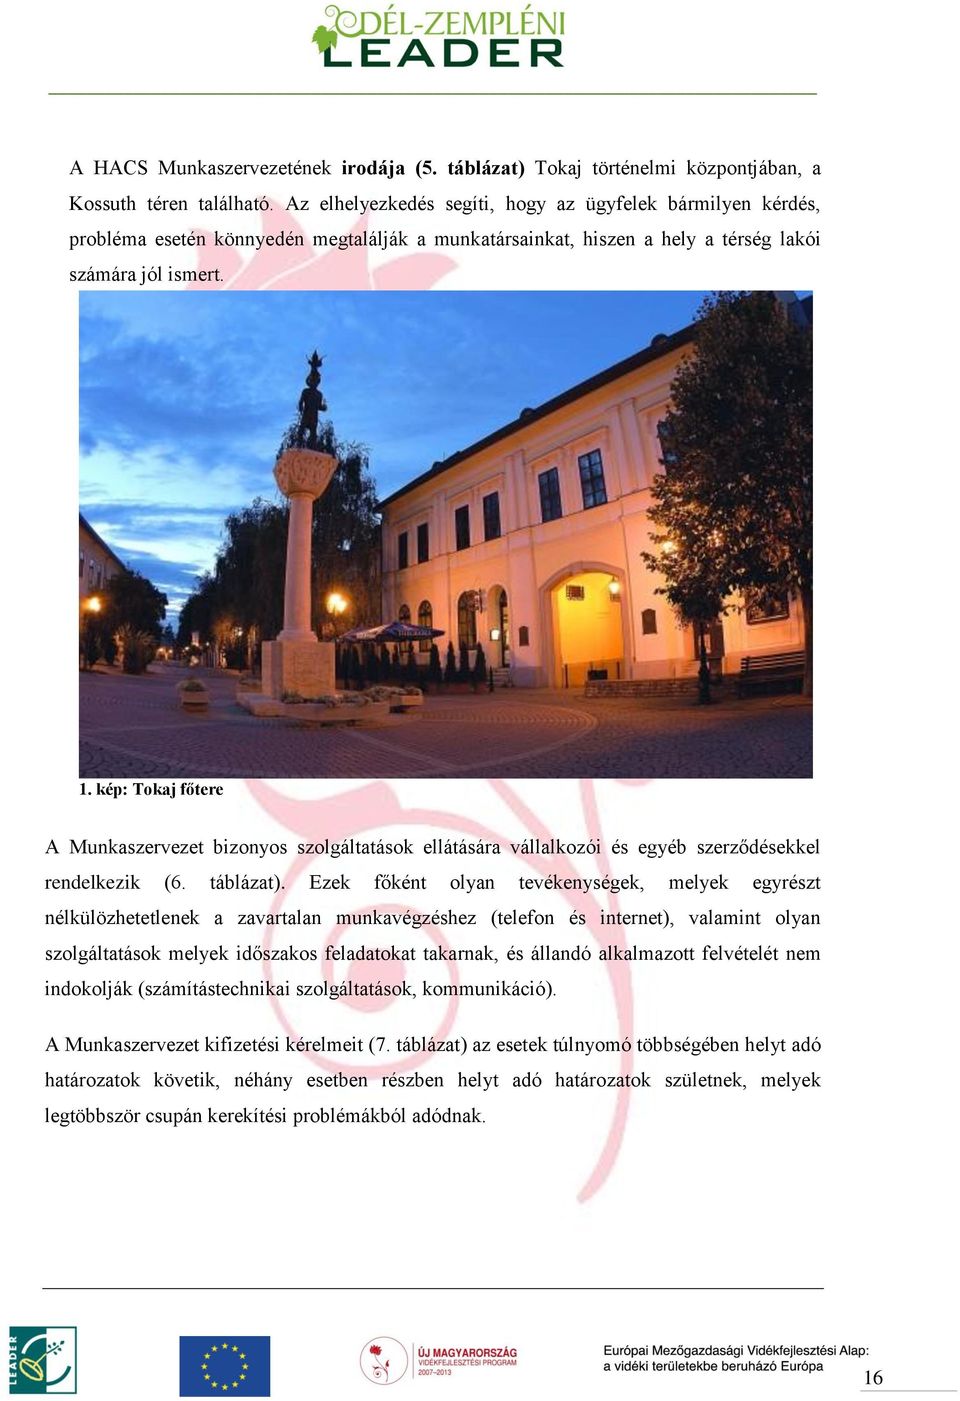 kép: Tokaj főtere A Munkaszervezet bizonyos szolgáltatások ellátására vállalkozói és egyéb szerződésekkel rendelkezik (6. táblázat).